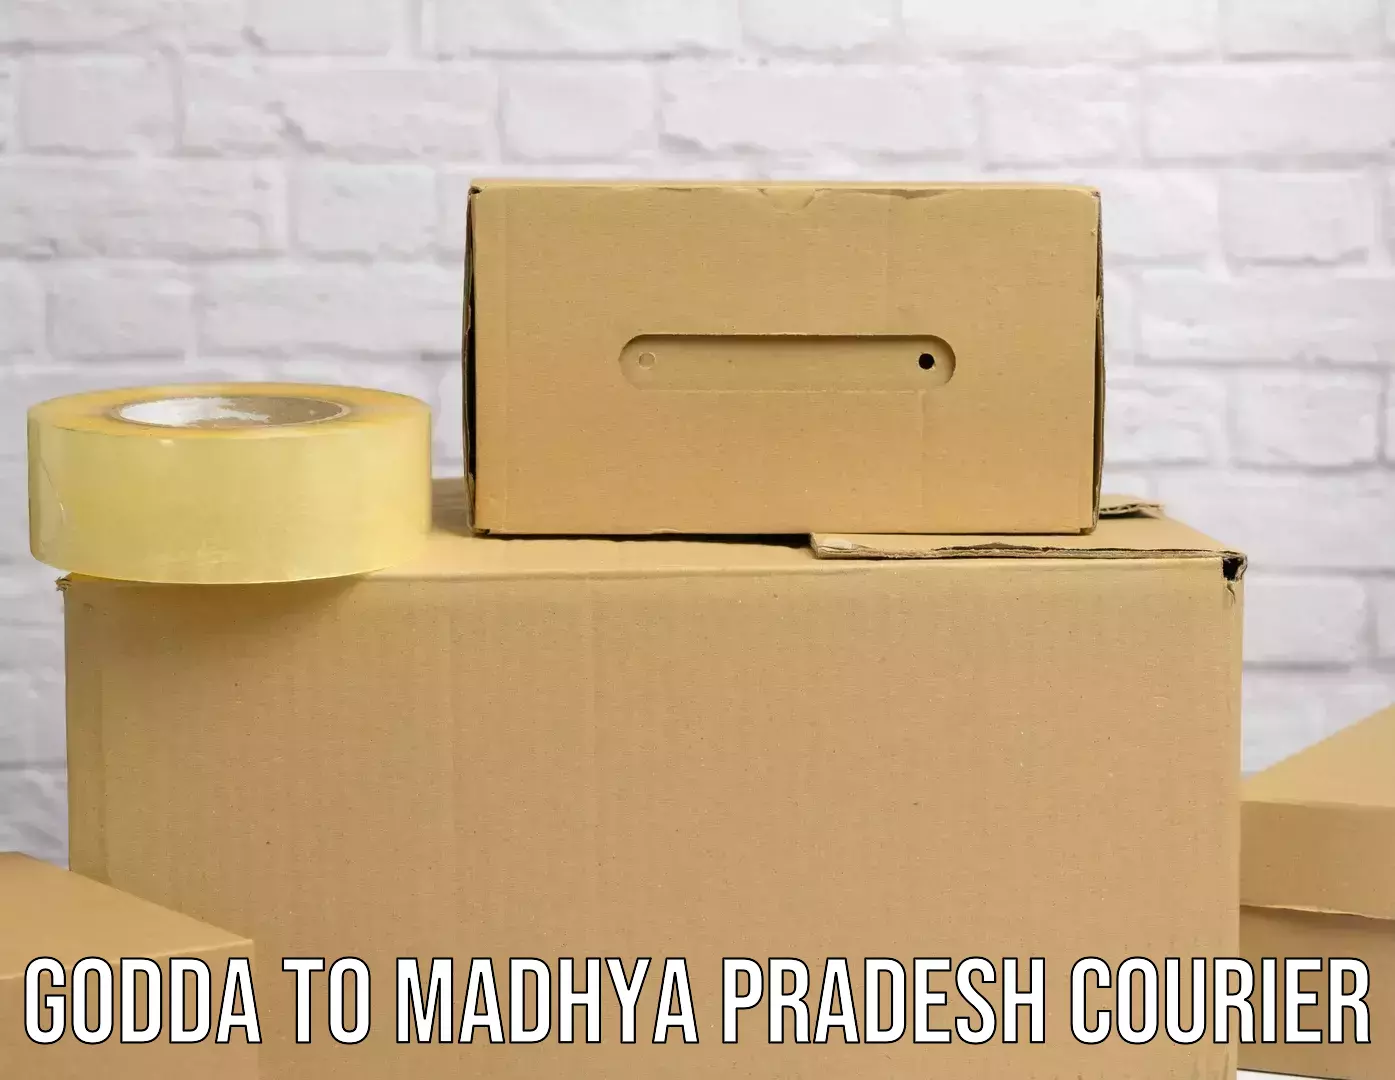 Efficient order fulfillment in Godda to Madhya Pradesh